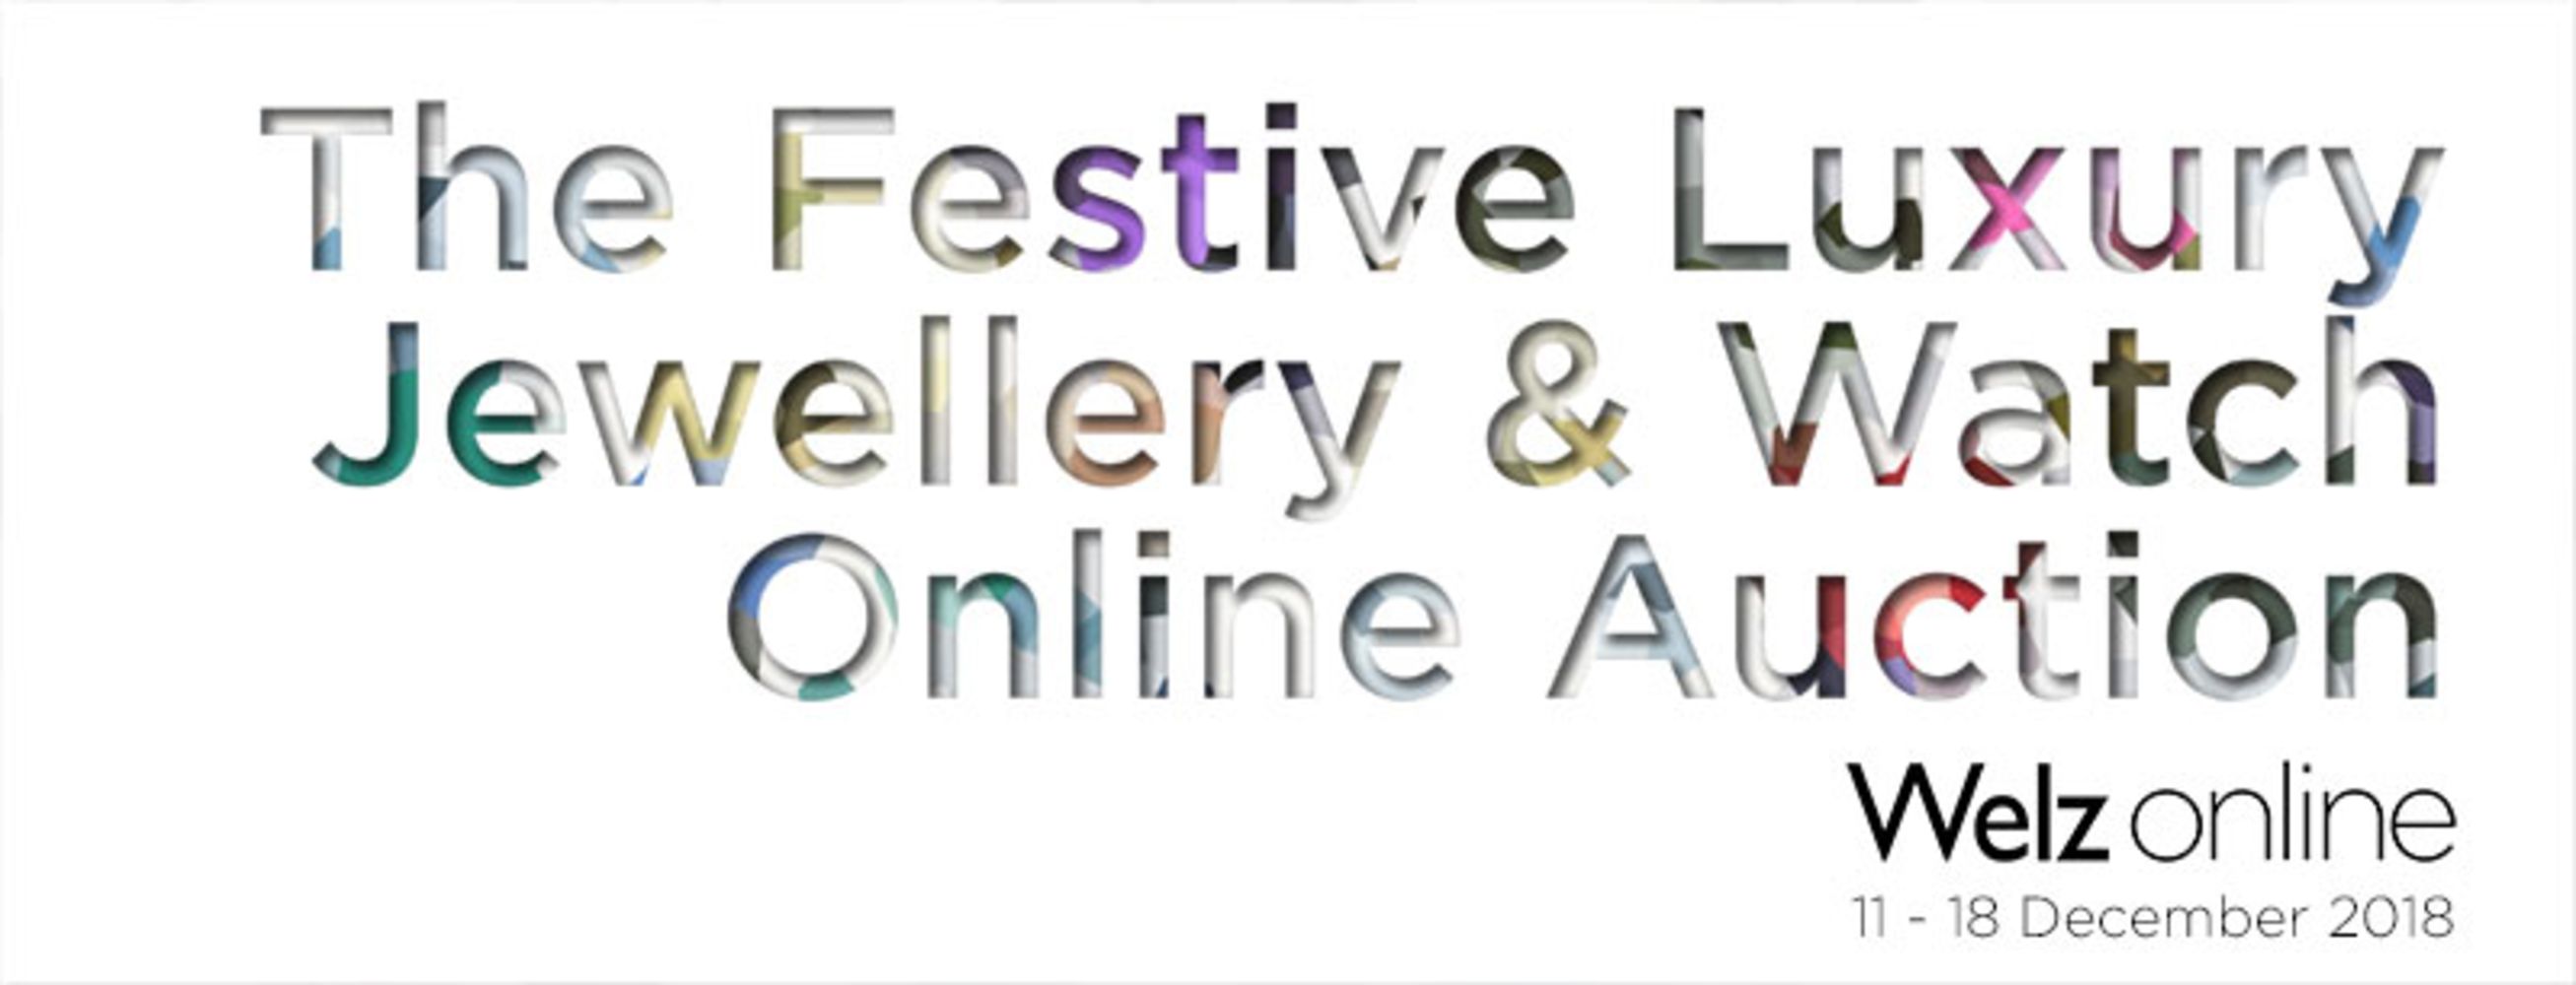 Welz Online | The Festive Luxury Jewellery & Watch Online Auction